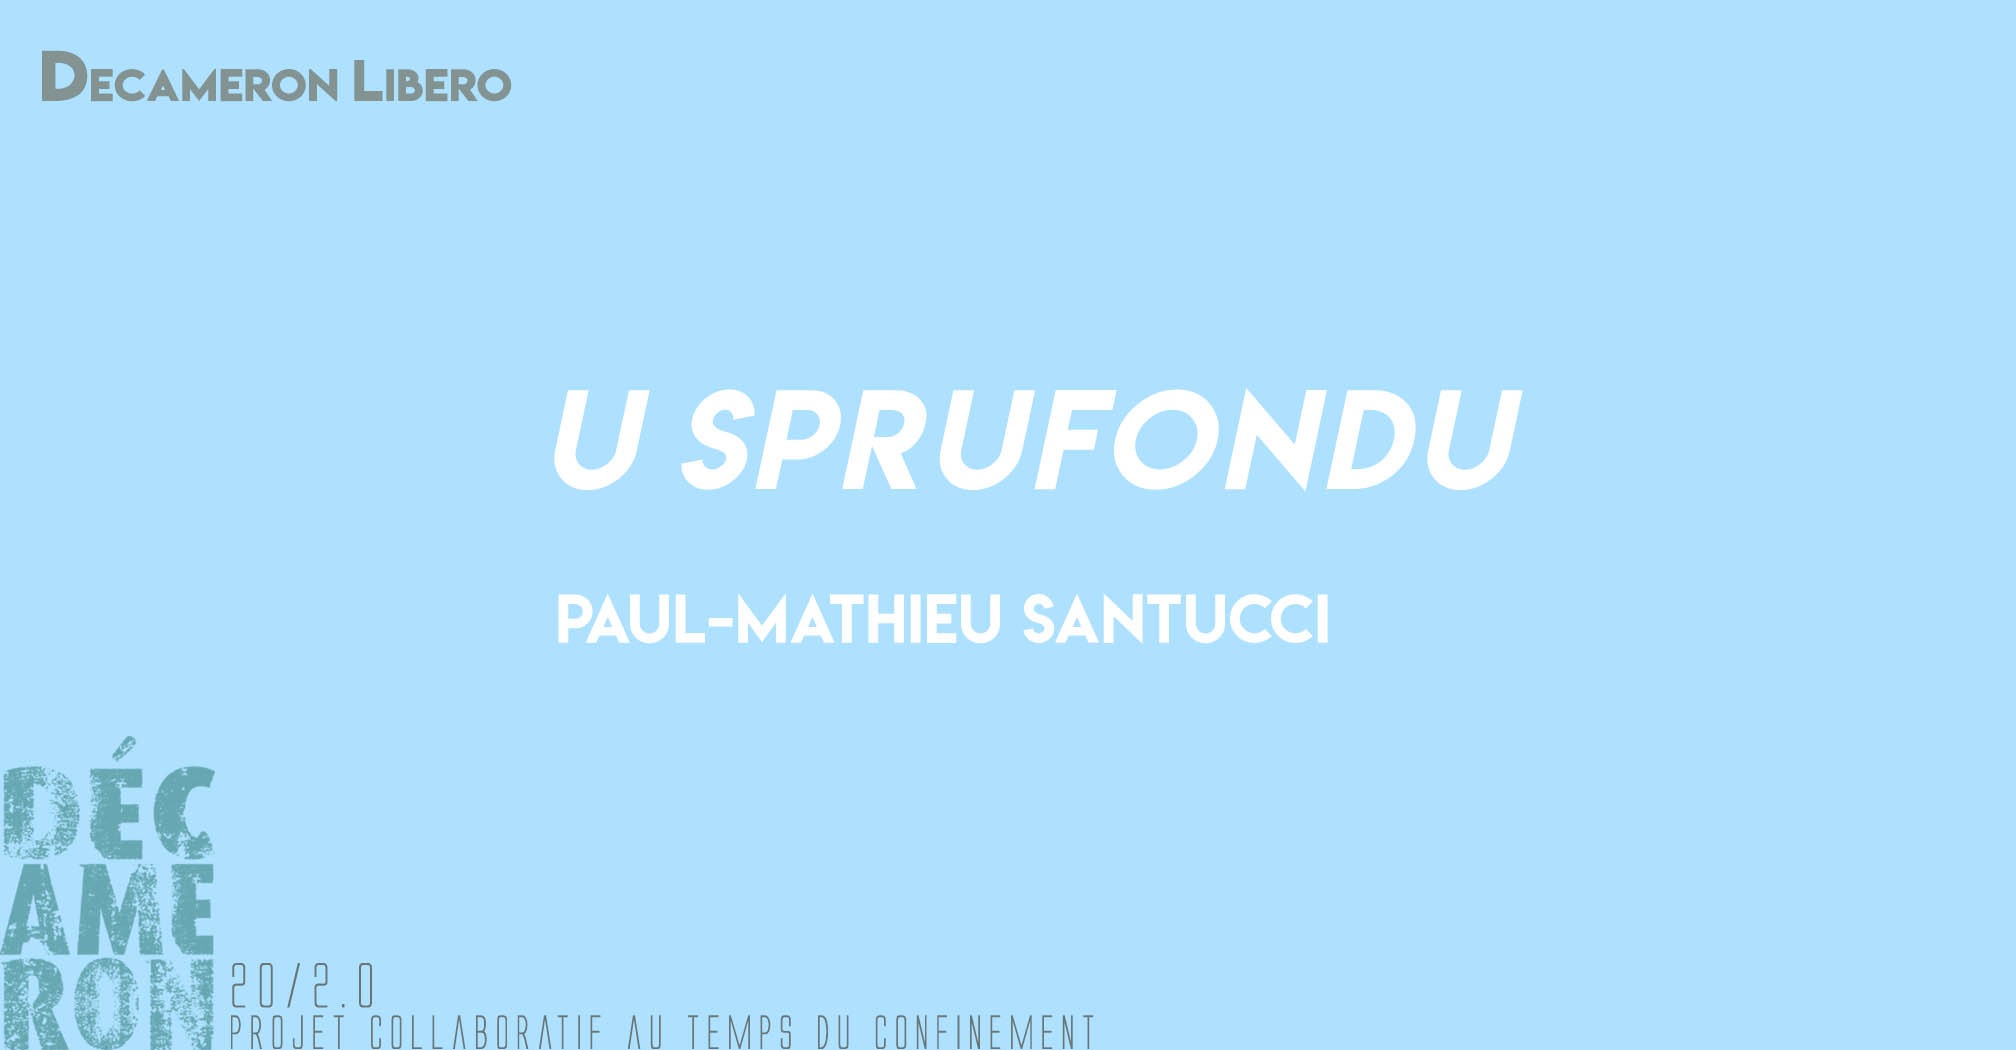 U sprufondu - Paul-Mathieu Santucci 